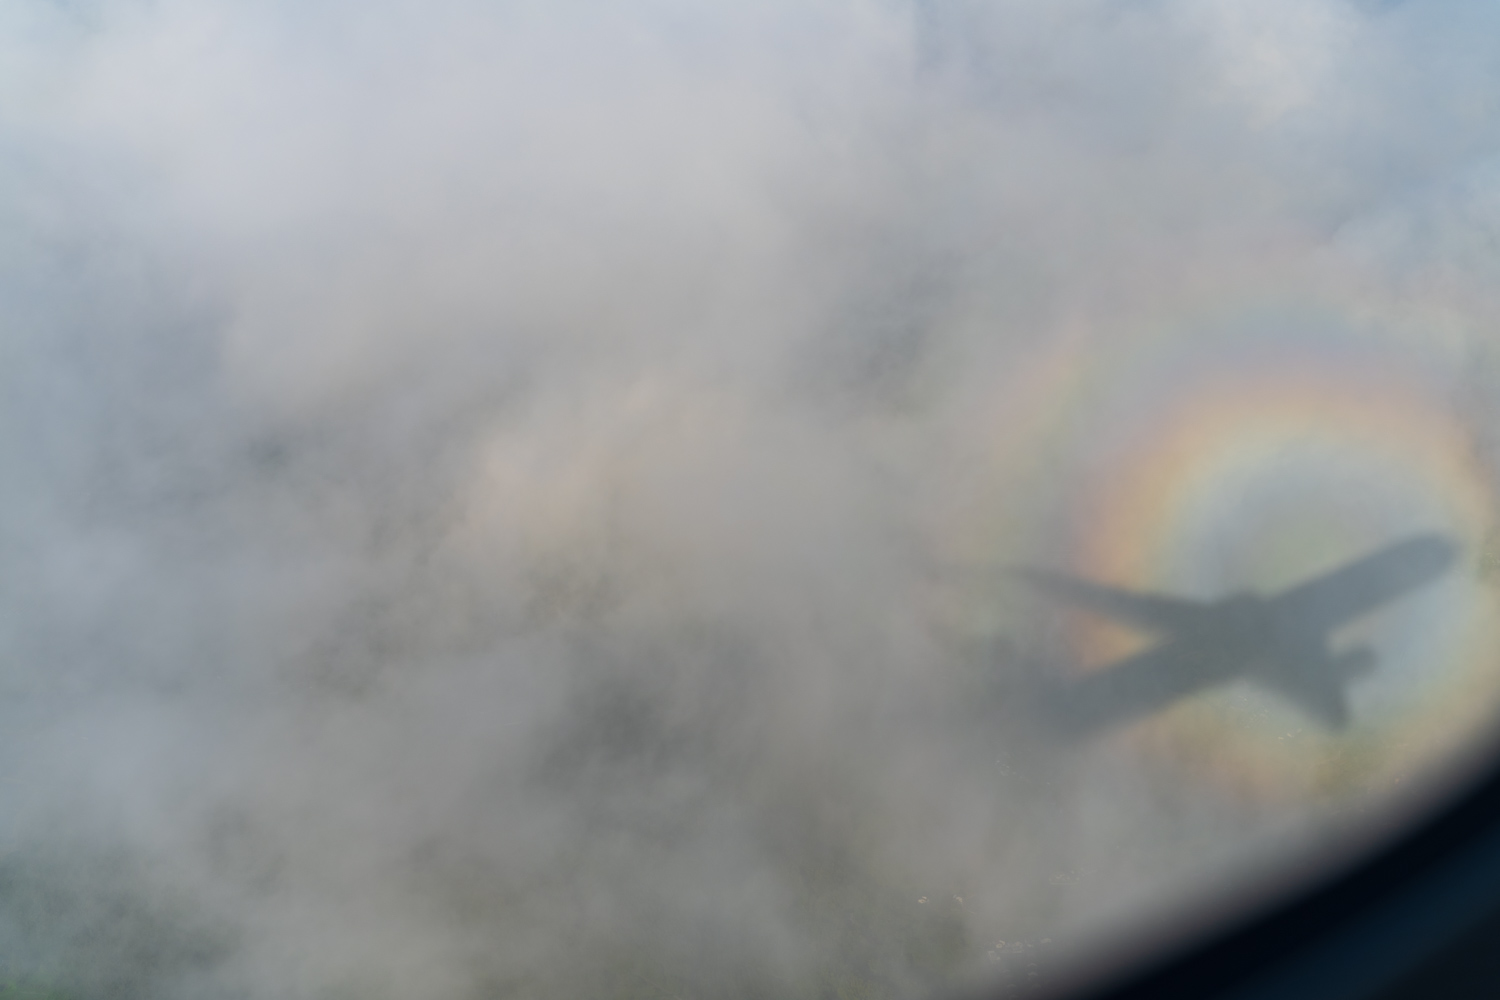 雲に丸い虹がうつっており、そこに飛行機の影もおちている